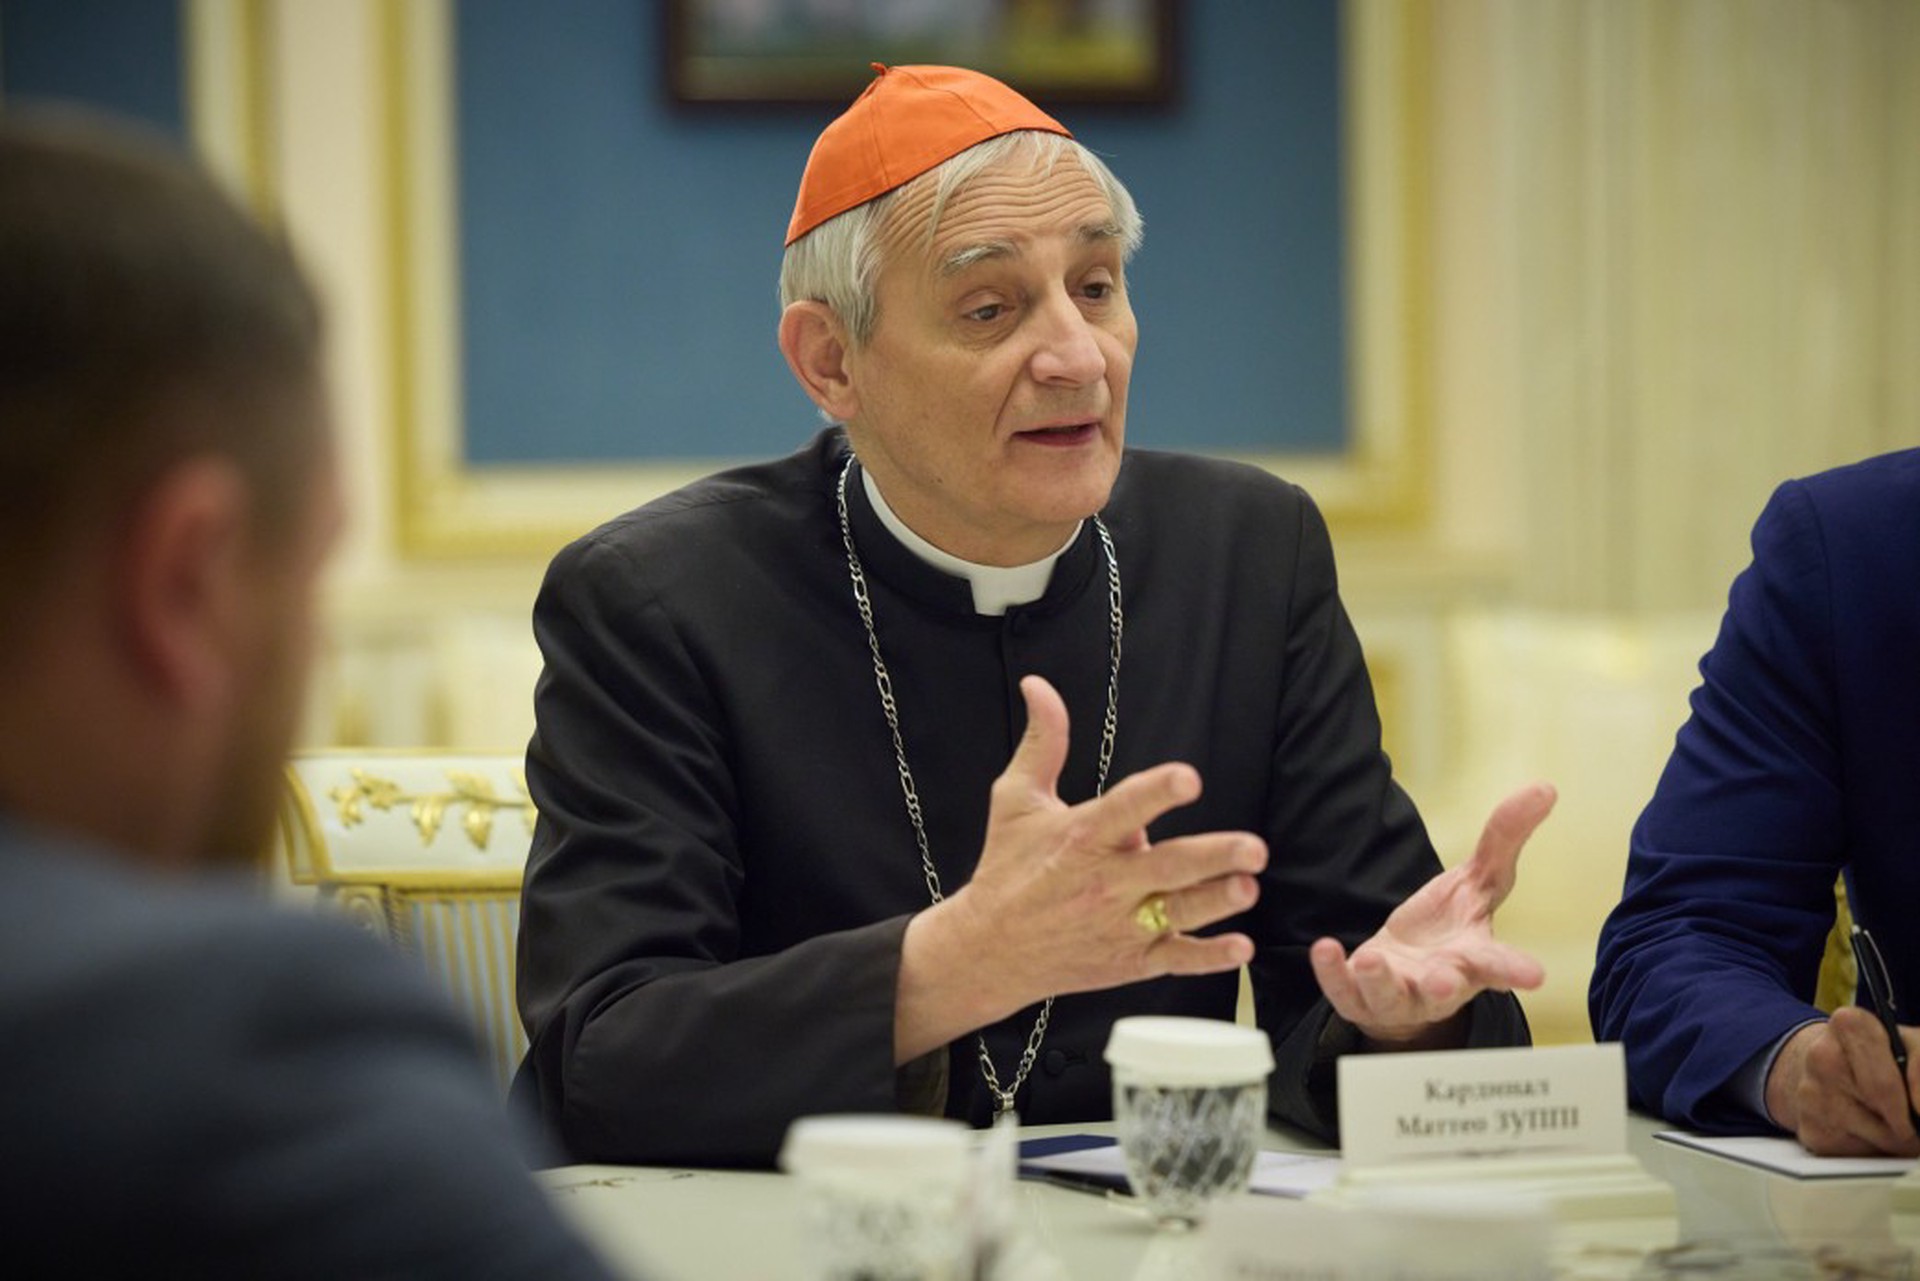 Посланник папы римского кардинал Дзуппи встретится с патриархом Кириллом